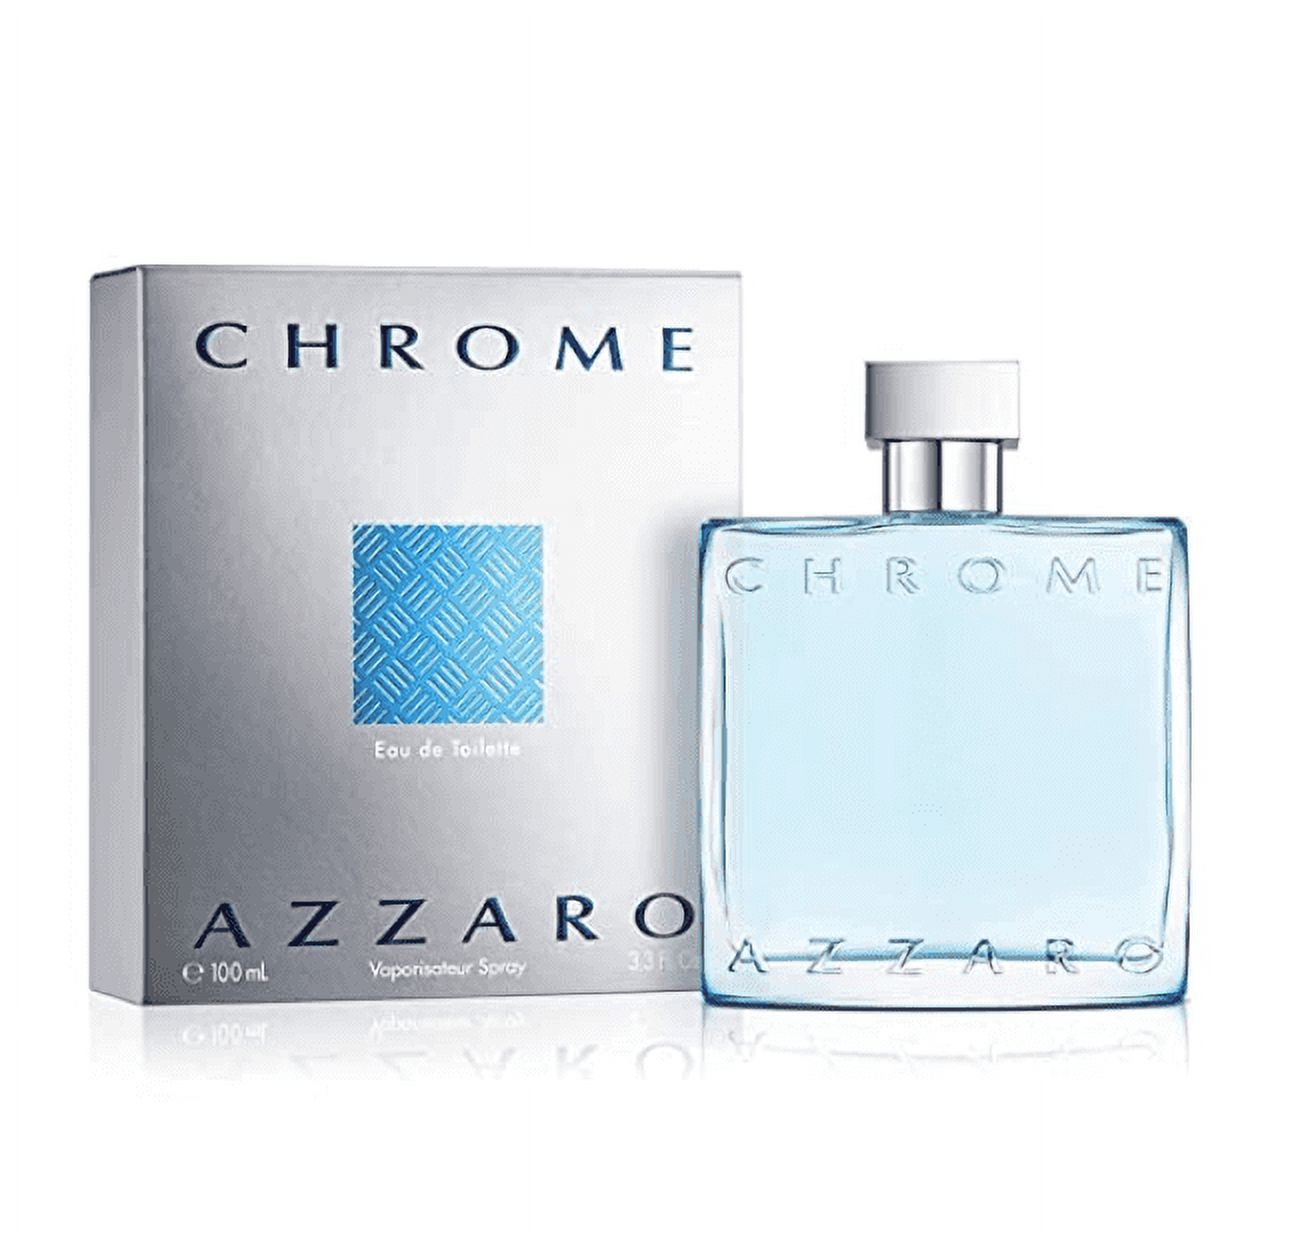 Azzaro Chrome Eau de Toilette, Cologne for Men, 3.4 oz - image 4 of 4